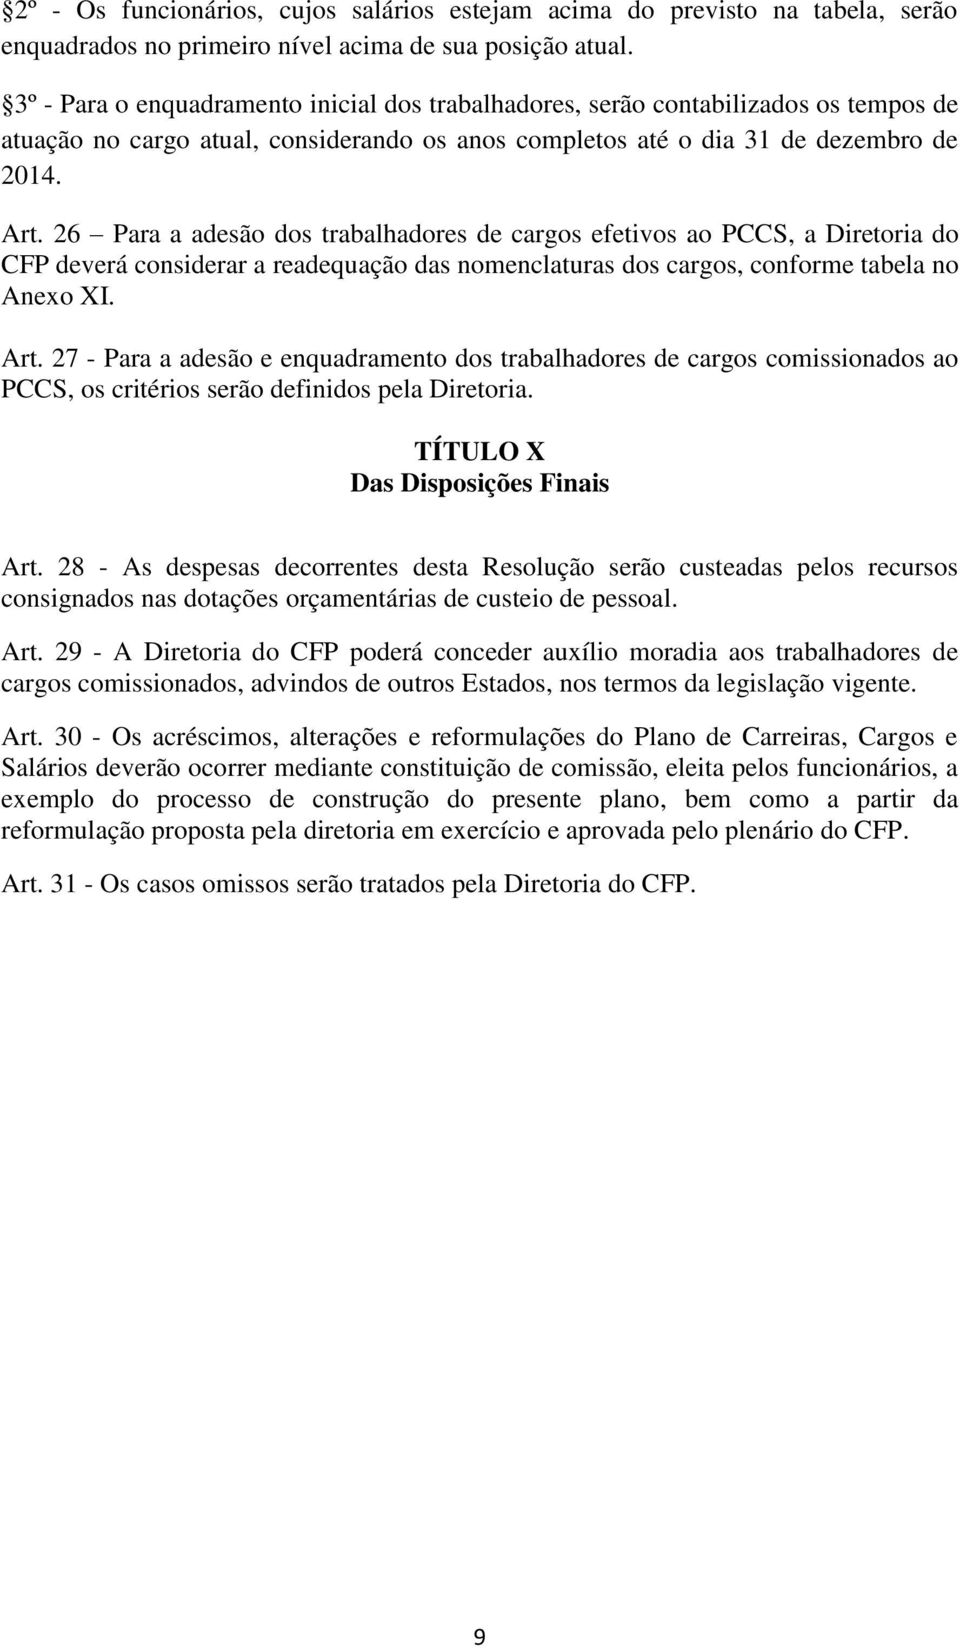 26 Para a adesão dos trabalhadores de cargos efetivos ao PCCS, a Diretoria do CFP deverá considerar a readequação das nomenclaturas dos cargos, conforme tabela no Anexo XI. Art.